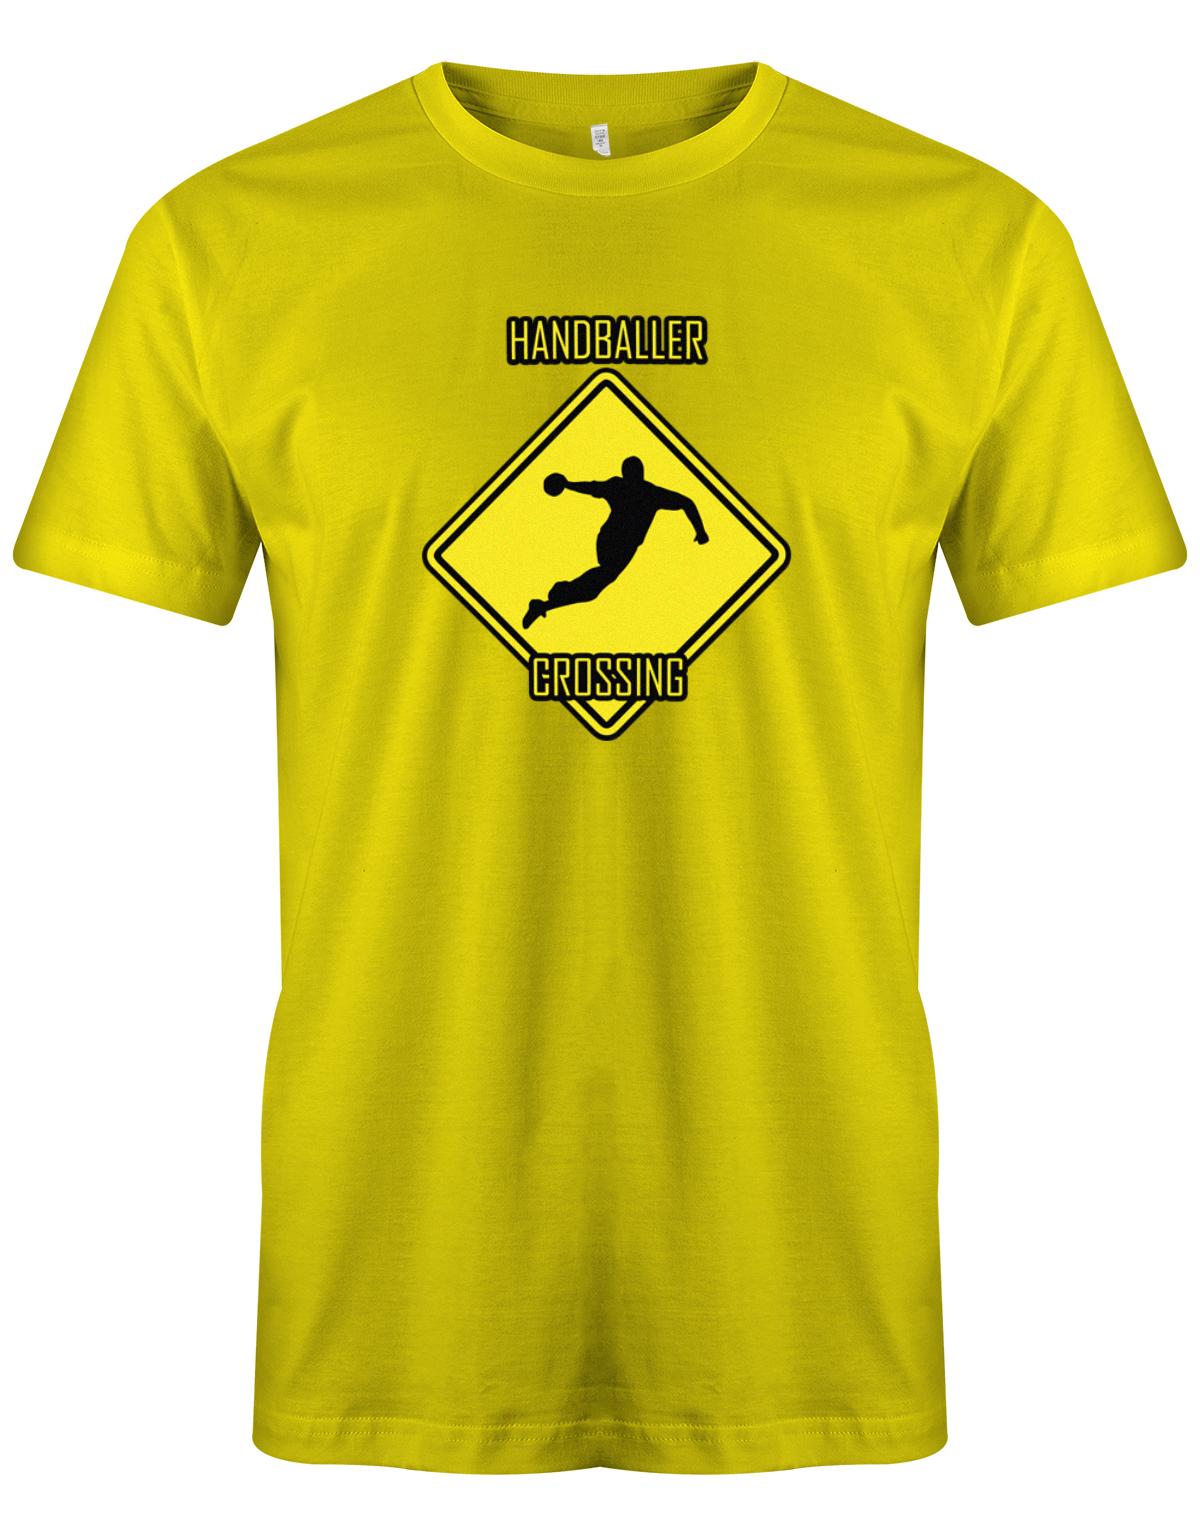 HAndballer-Crossing-Handball-Shirt-Herren-gelb